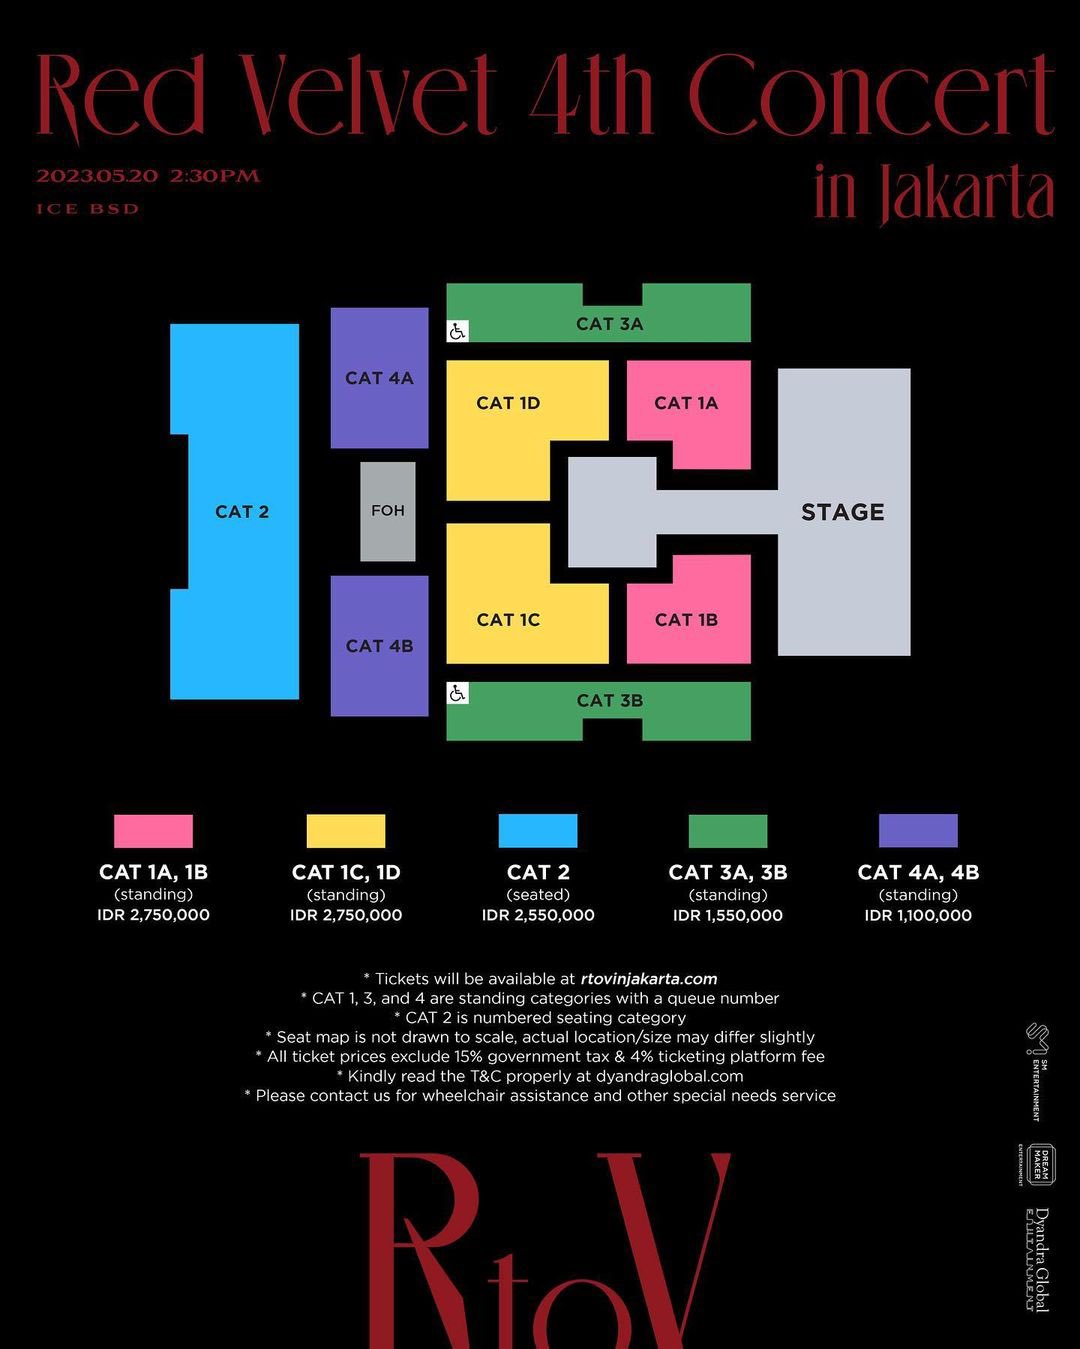 Harga Tiket dan Seating Plan Konser Red Velvet di Jakarta